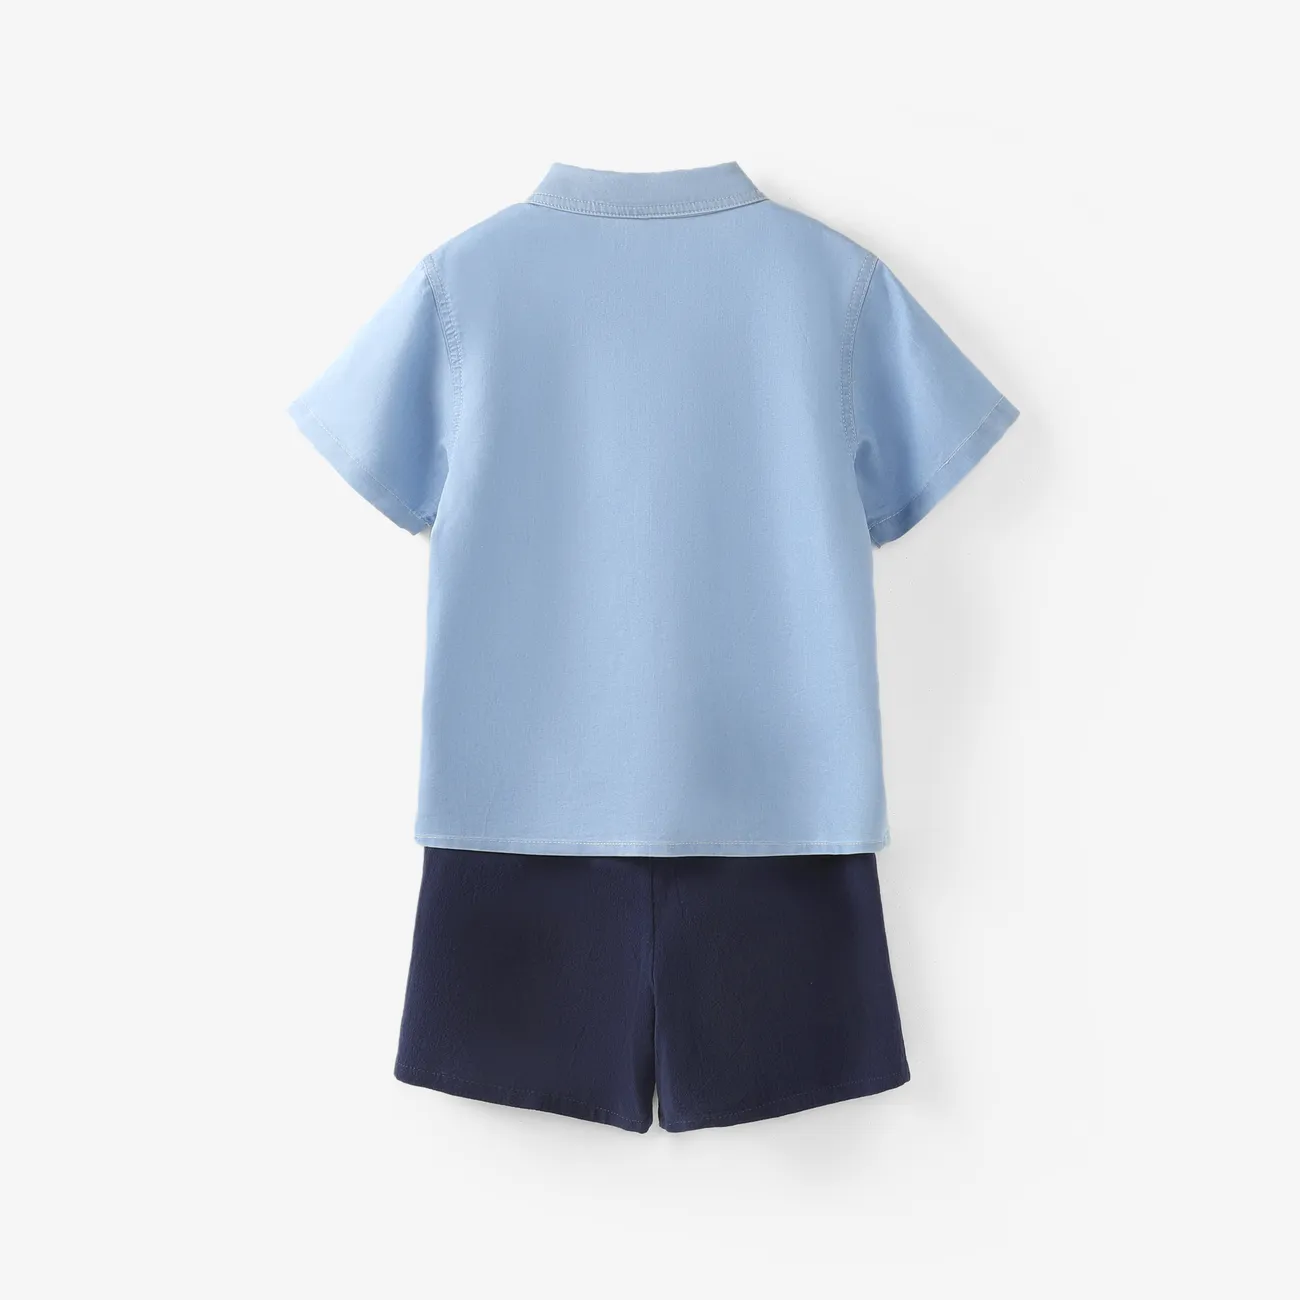 Toddler/Kid Boy 2pcs Cooling Denim Letter Print Shirt and Shorts Set Light Blue big image 1